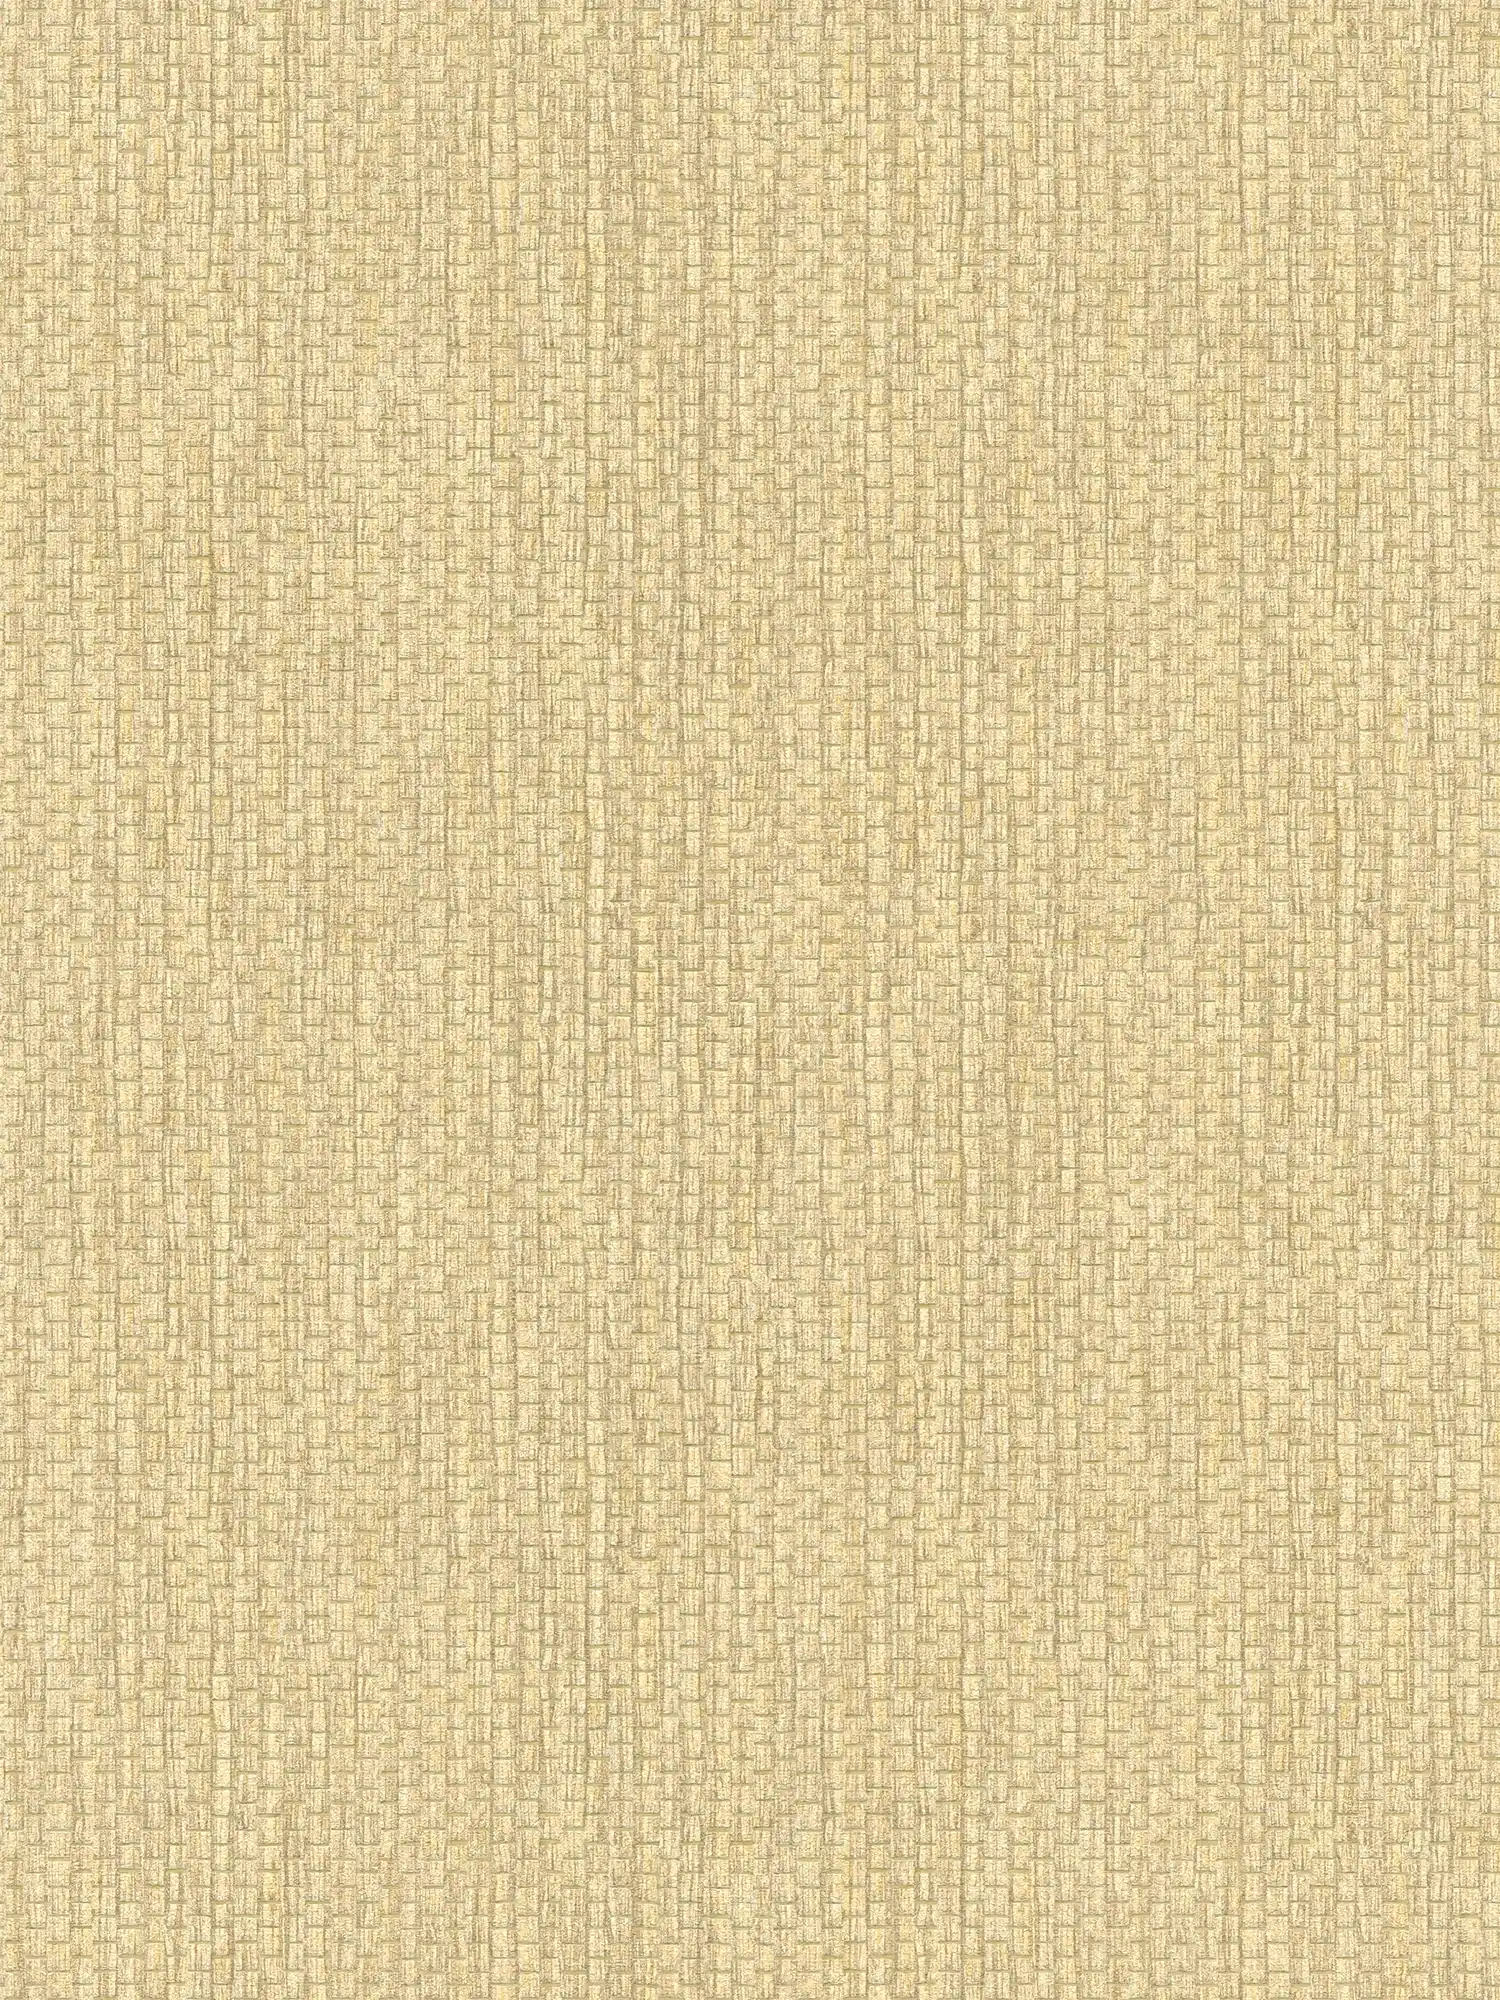 Non-woven wallpaper with raffia design - yellow, white
